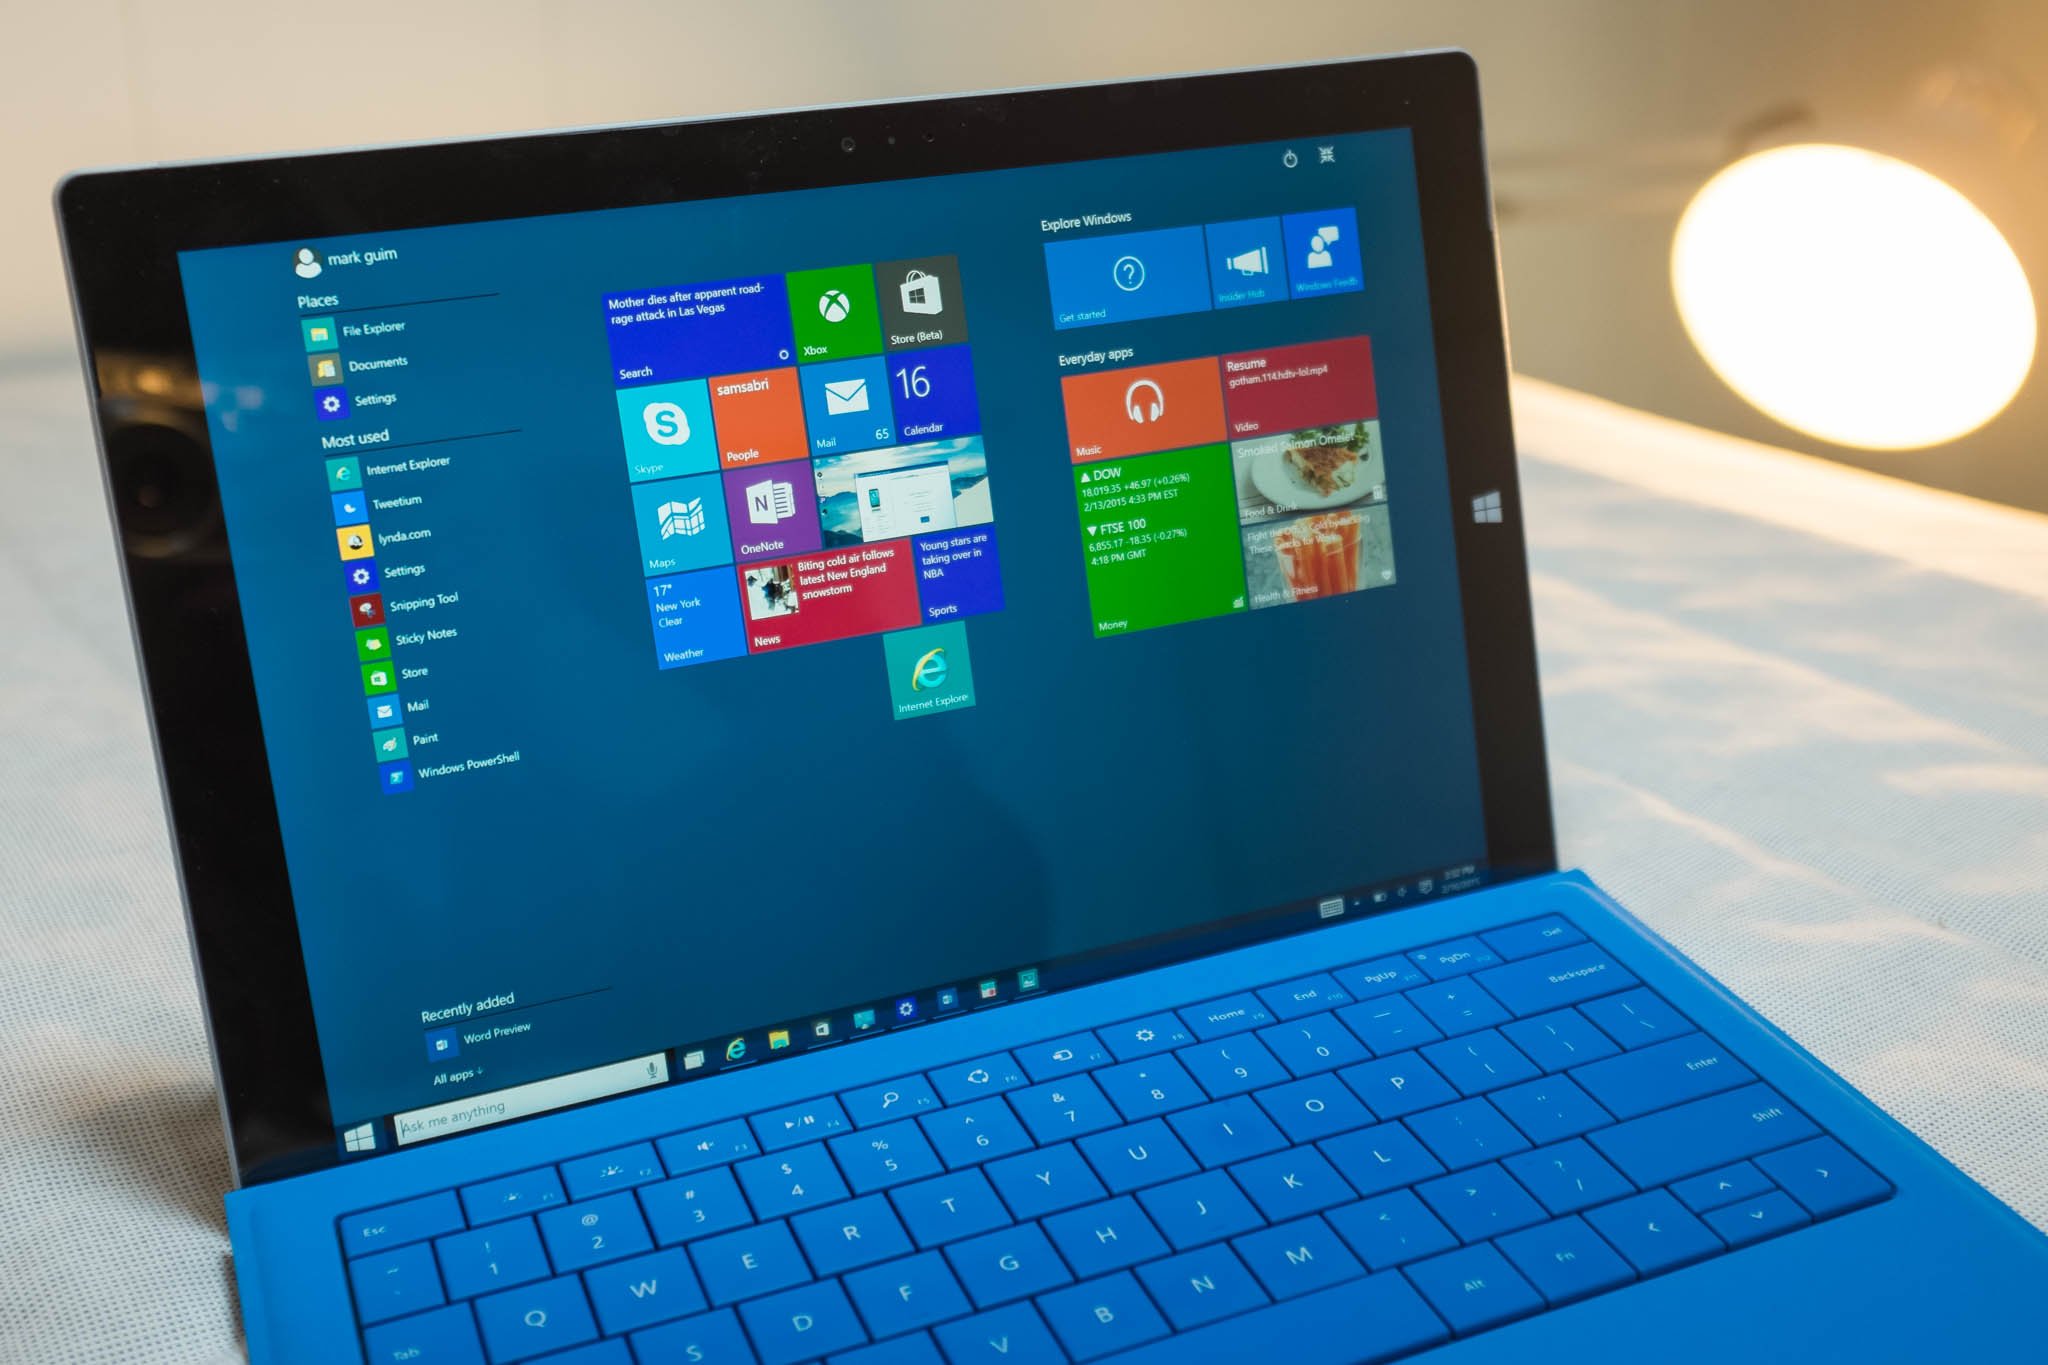 Windows 10 on Surface Pro 3